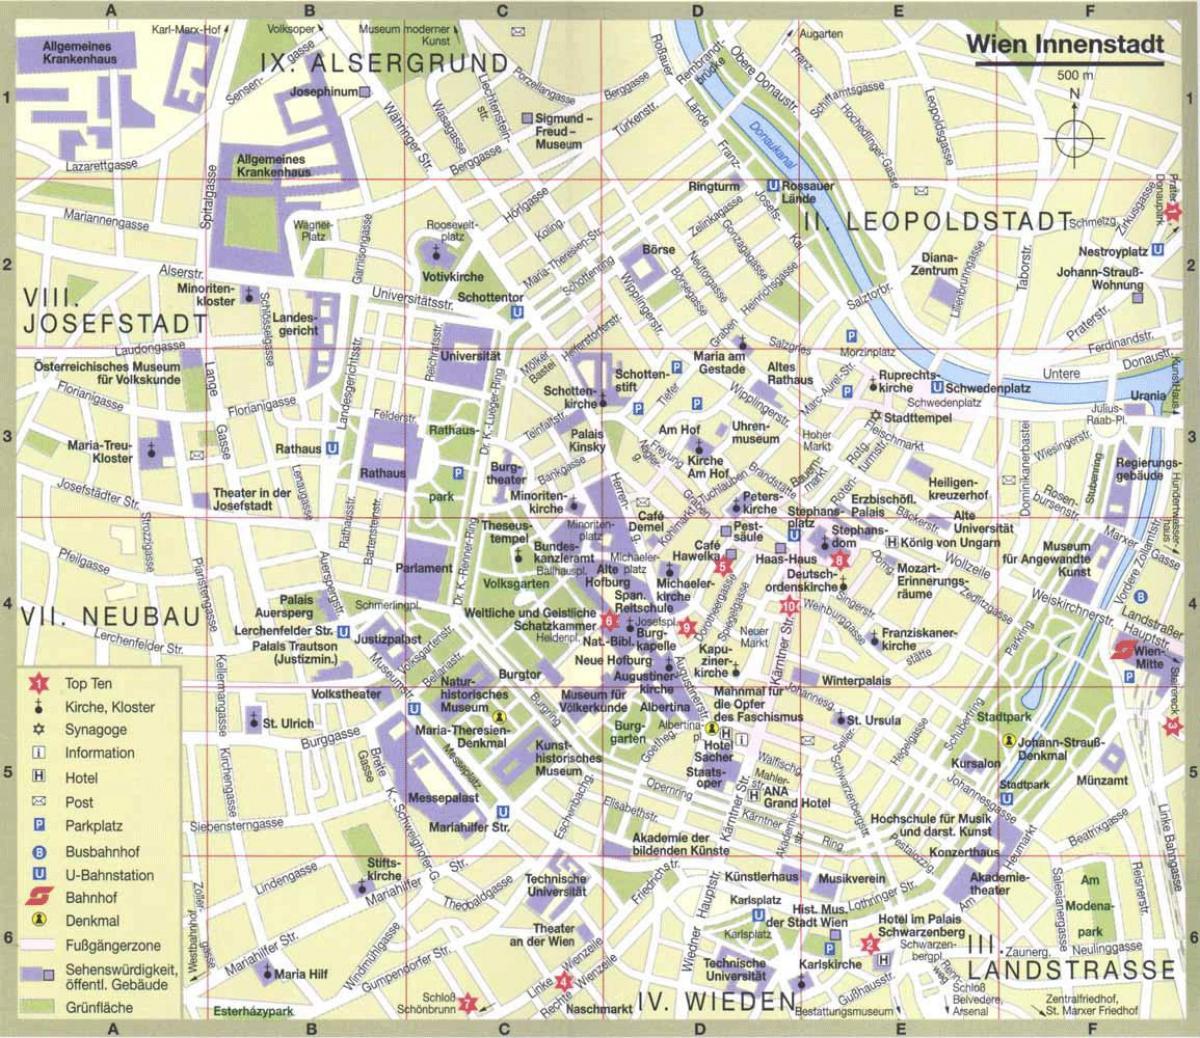 Vjenë qytetit hartën turistike